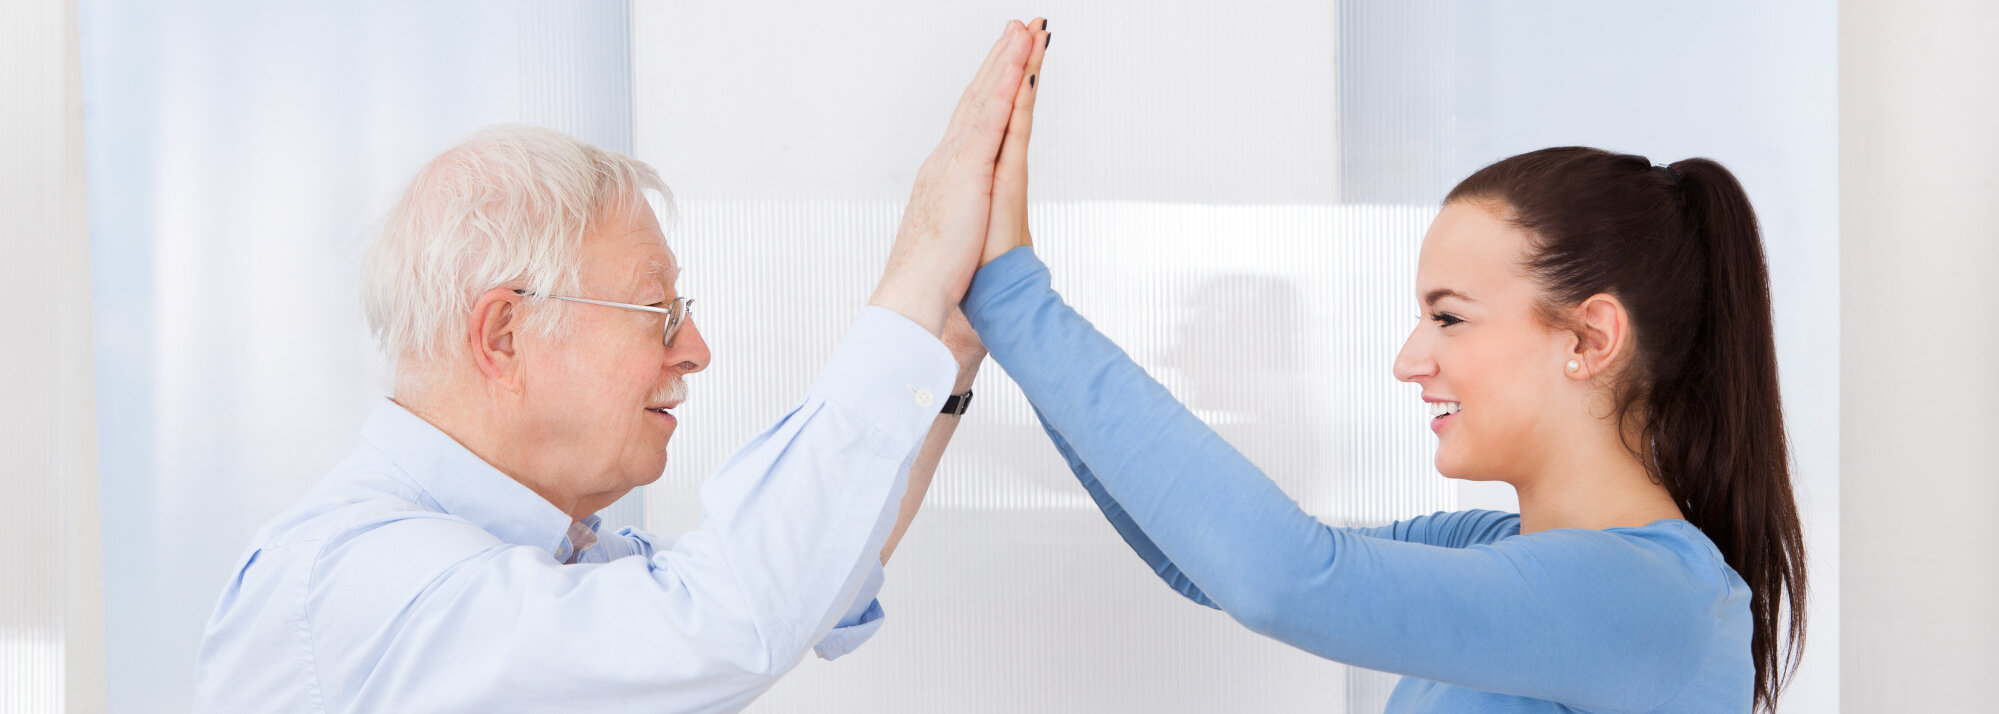 Seitliche Aufnahme eines älteren Herren in weißem Hemd und einer jungen Frau in einem hellblauem Langarm-Shirt. Beide lächeln sich an, strecken ihre Hände in die Höhe und berühren sich gegenseitig mit den Handflächen.